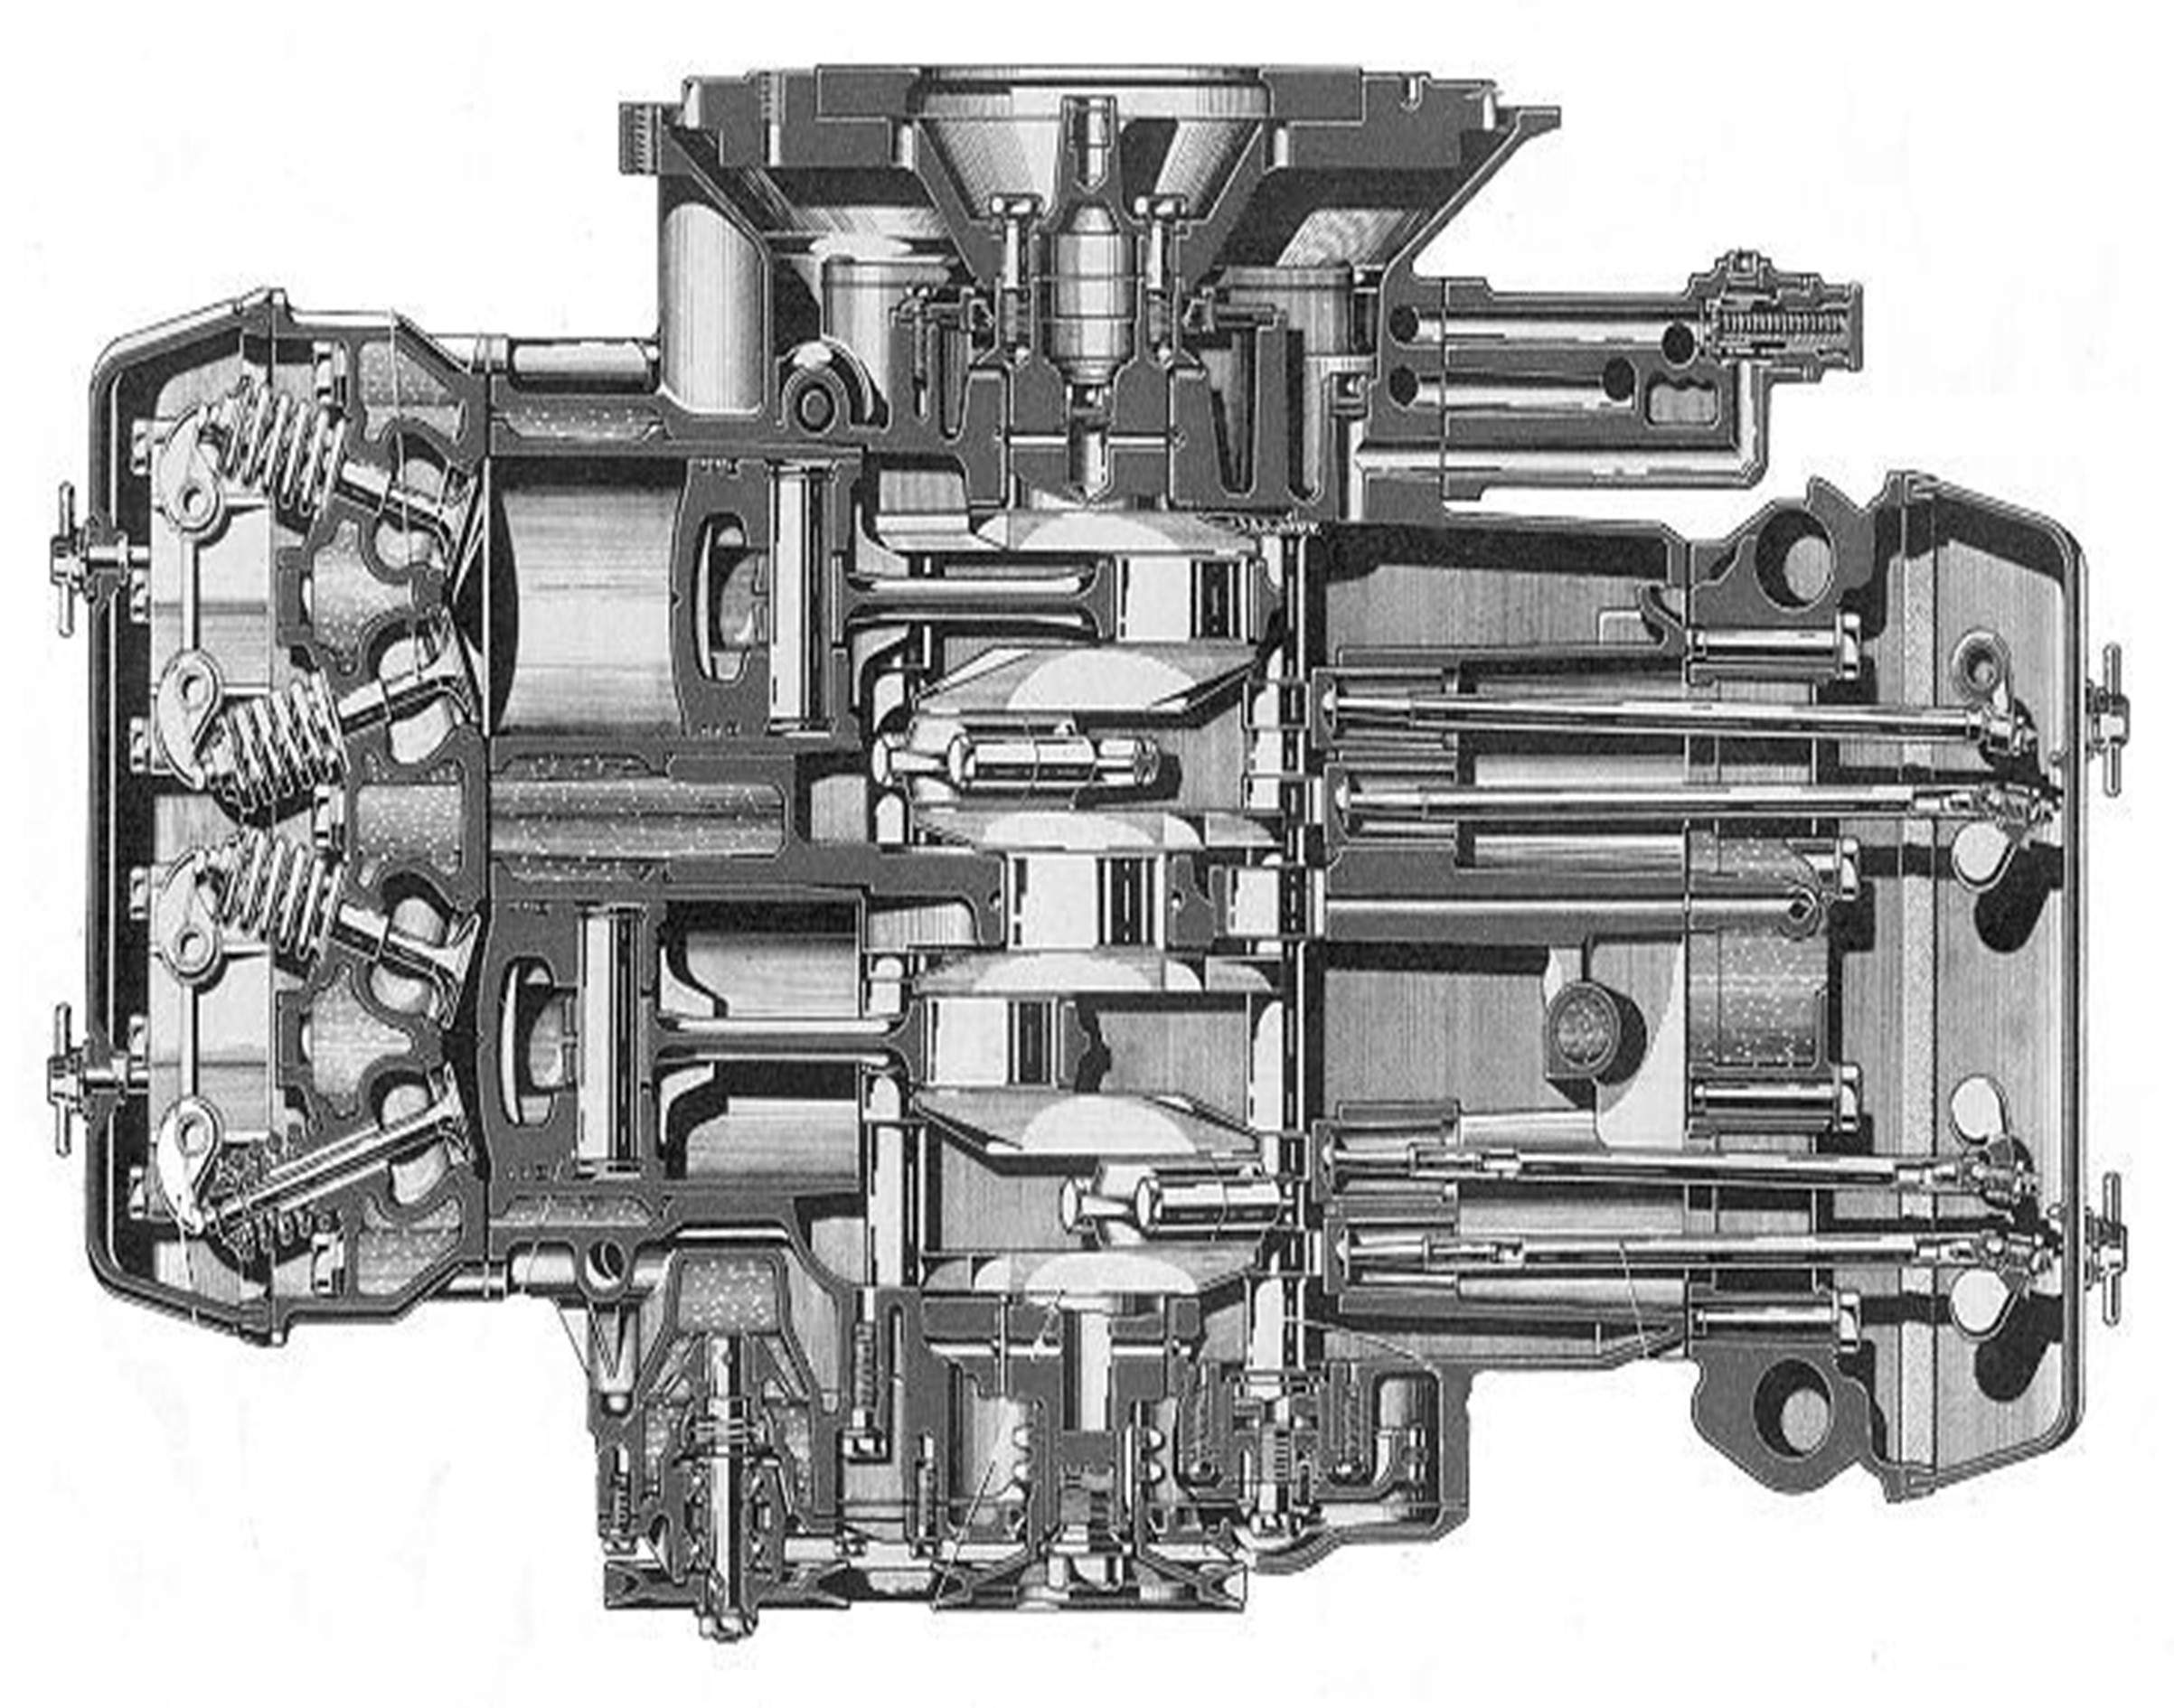 Sezione motore Flavia